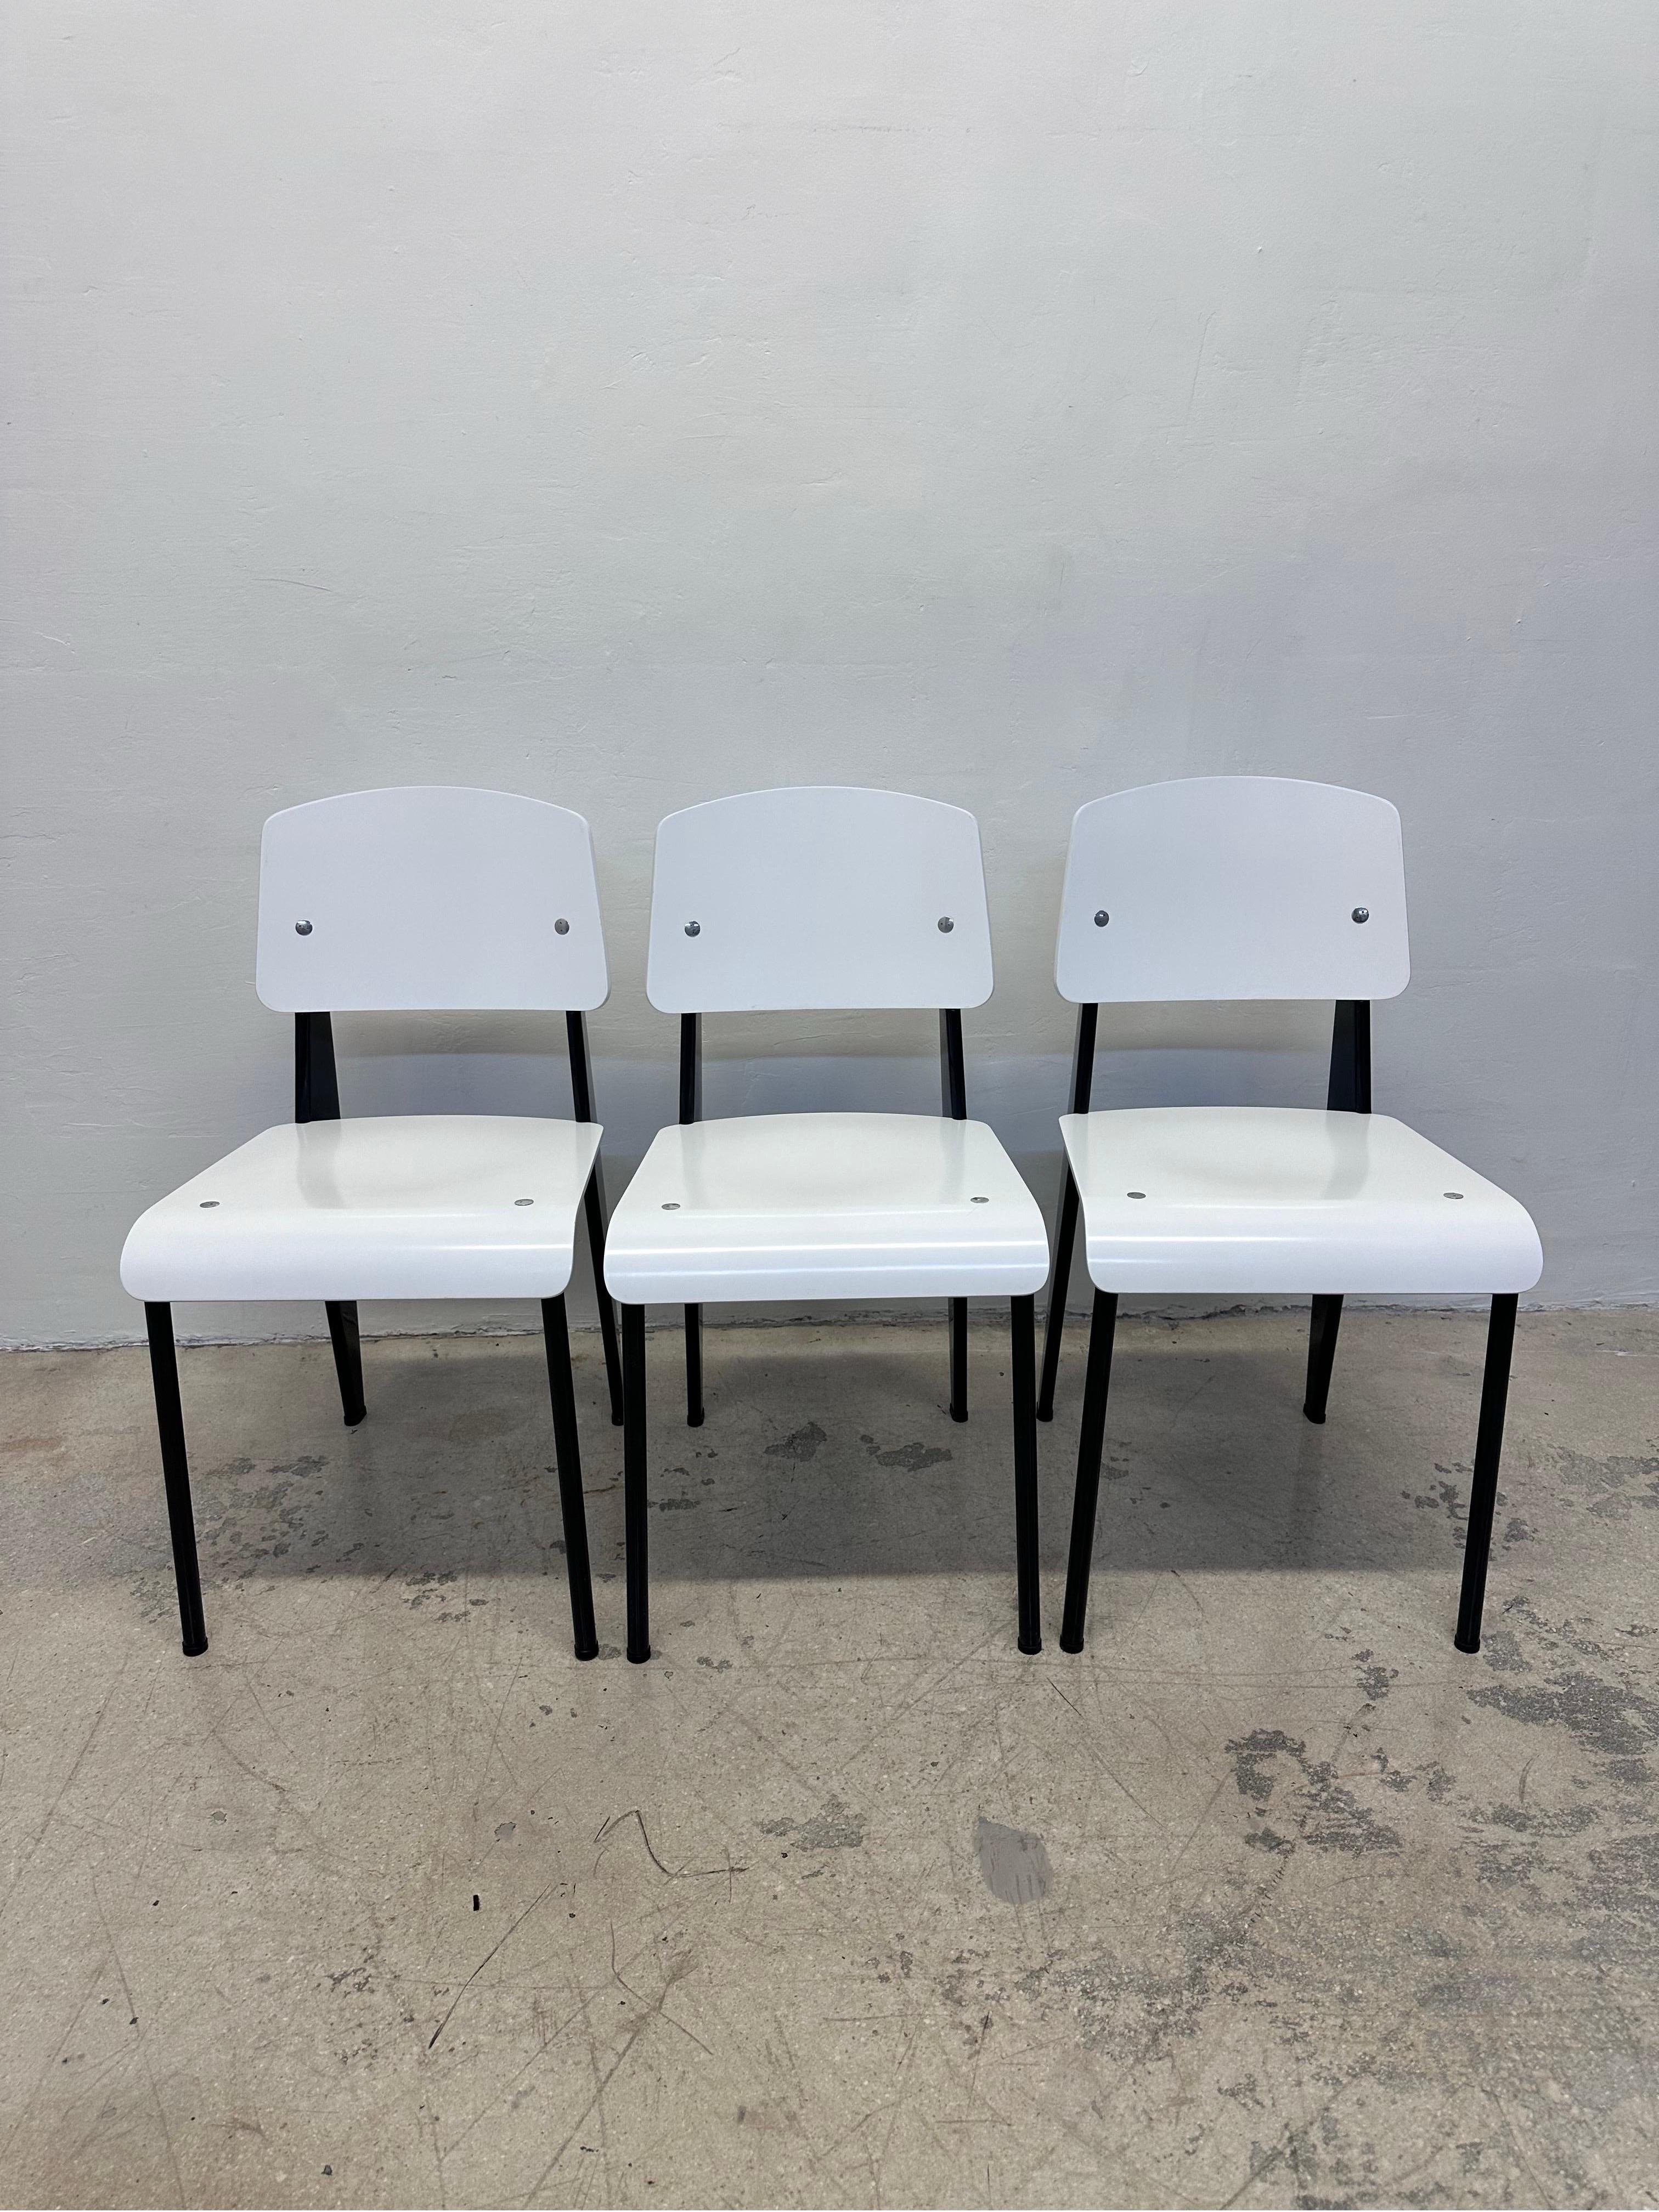 Ensemble de trois chaises Standard avec assise et dossier laqués blancs sur une structure en acier laqué noir par Jean Prouve pour Vitra. 

Les sièges et les dossiers en bois semblent avoir été revernis sur une finition noire d'origine.